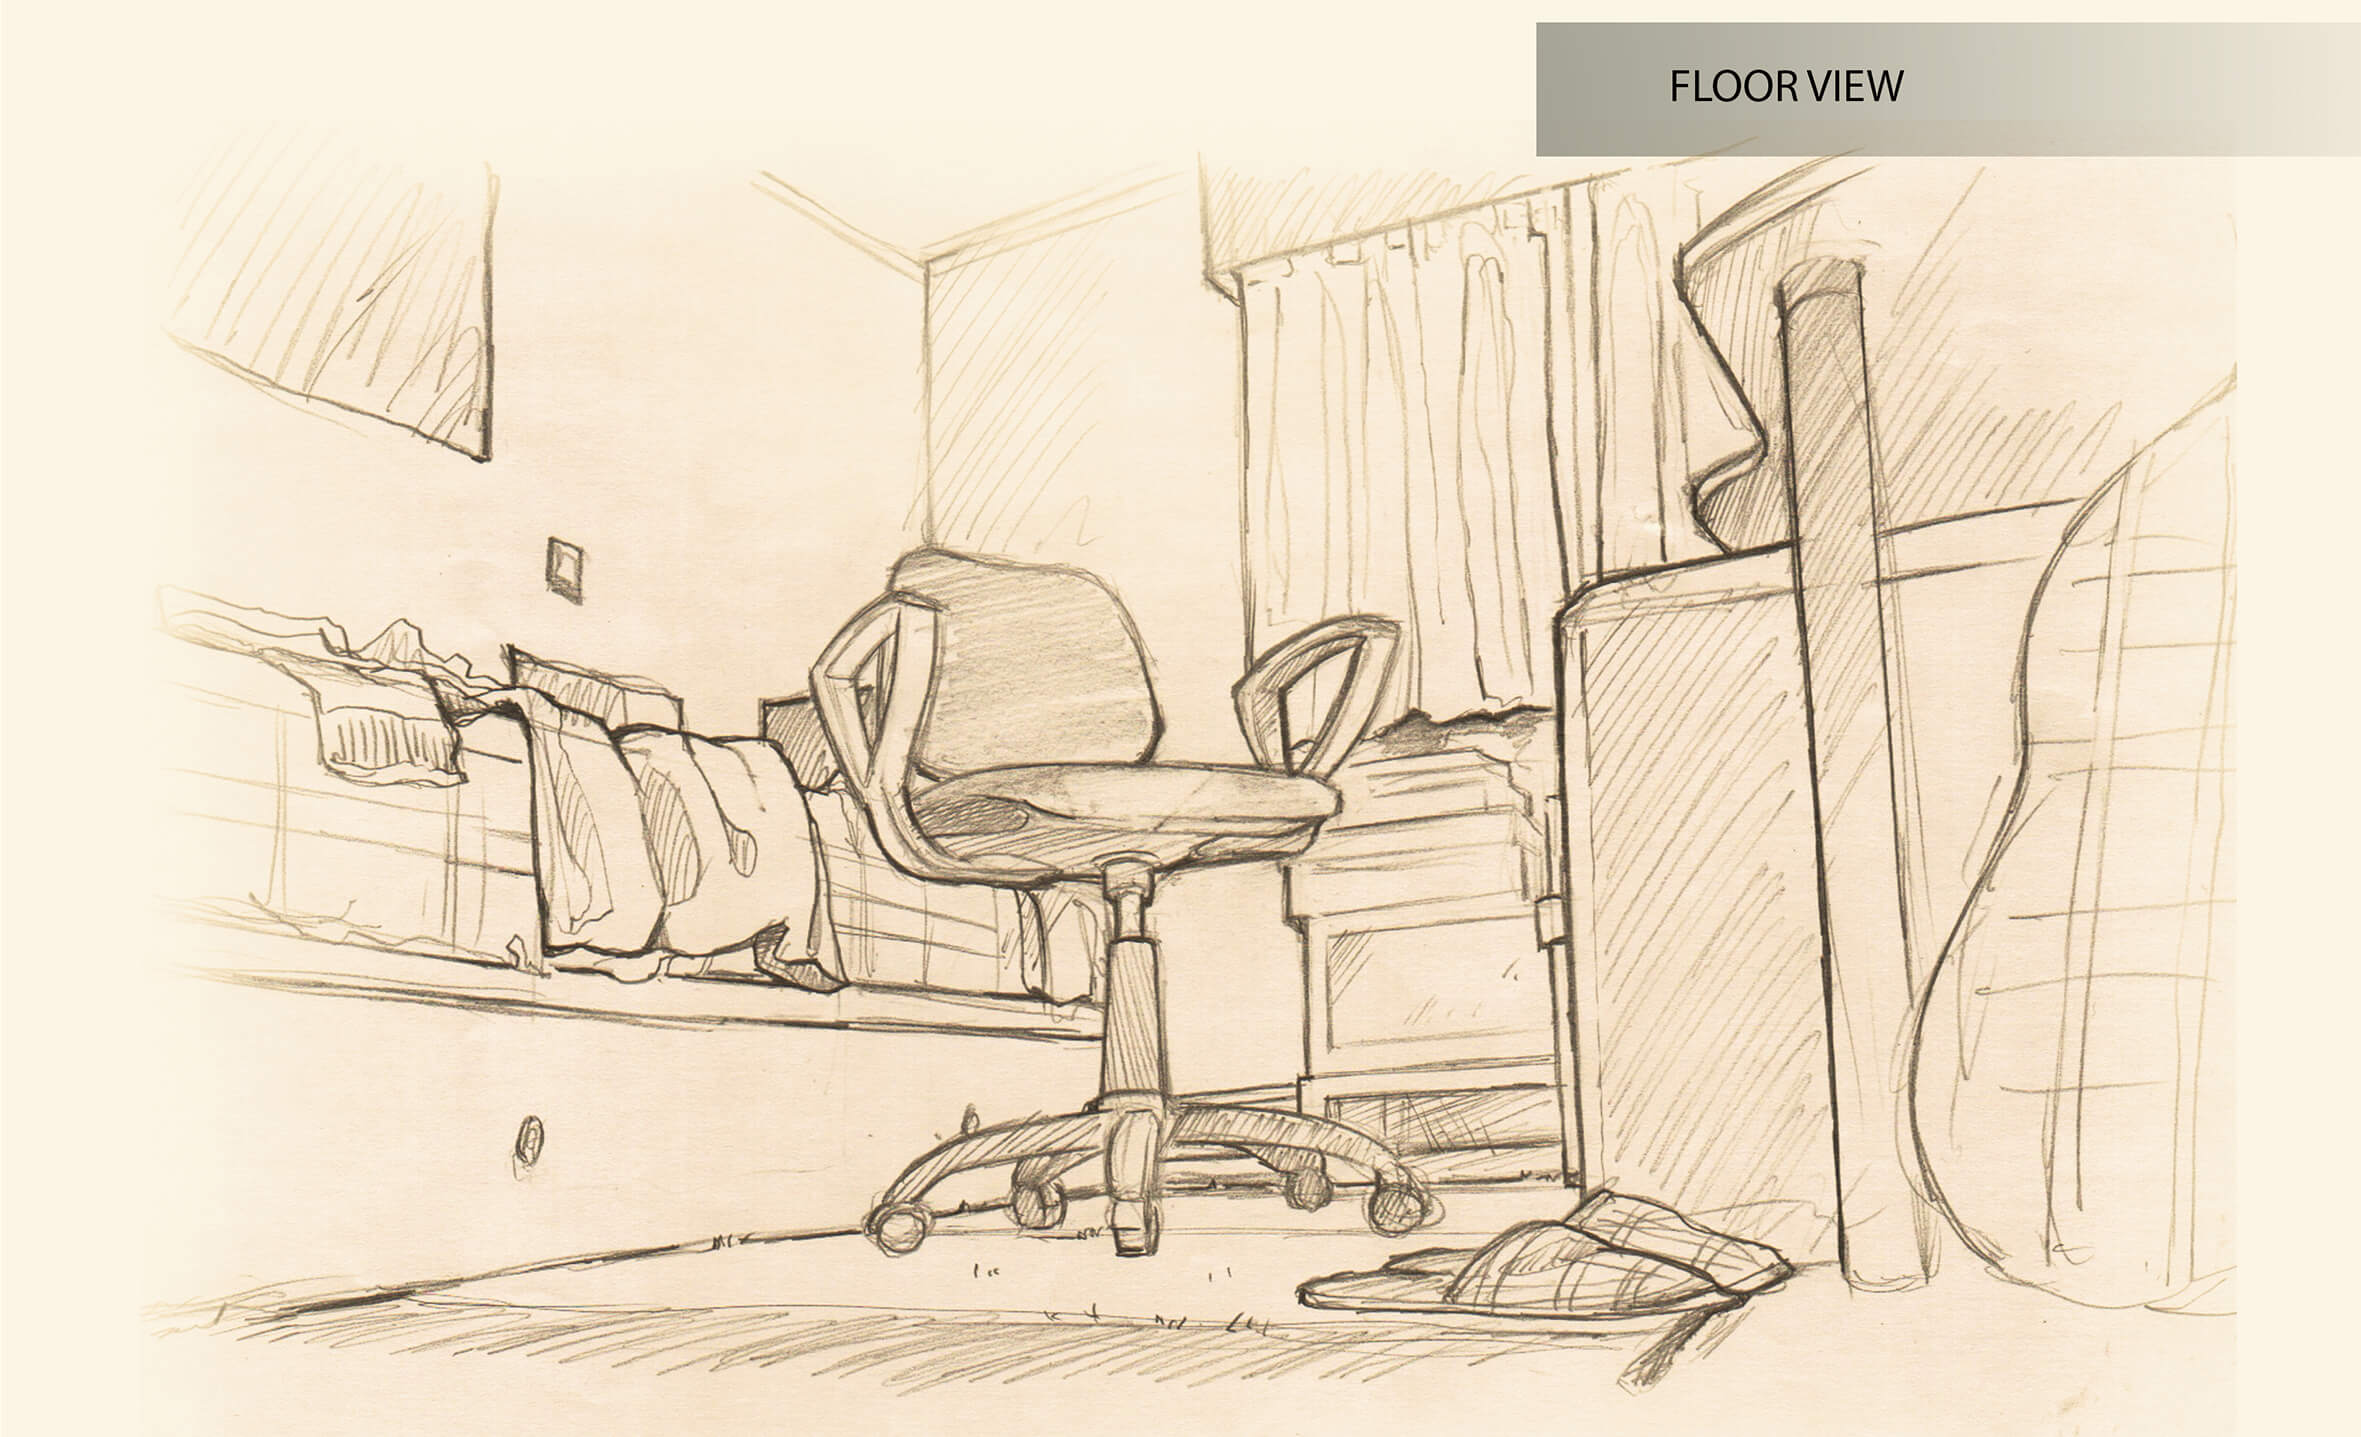 Vista en blanco y negro del esbozo de un dormitorio visto desde el suelo. Una silla de ordeandor con ruedas es el foco de la obra.